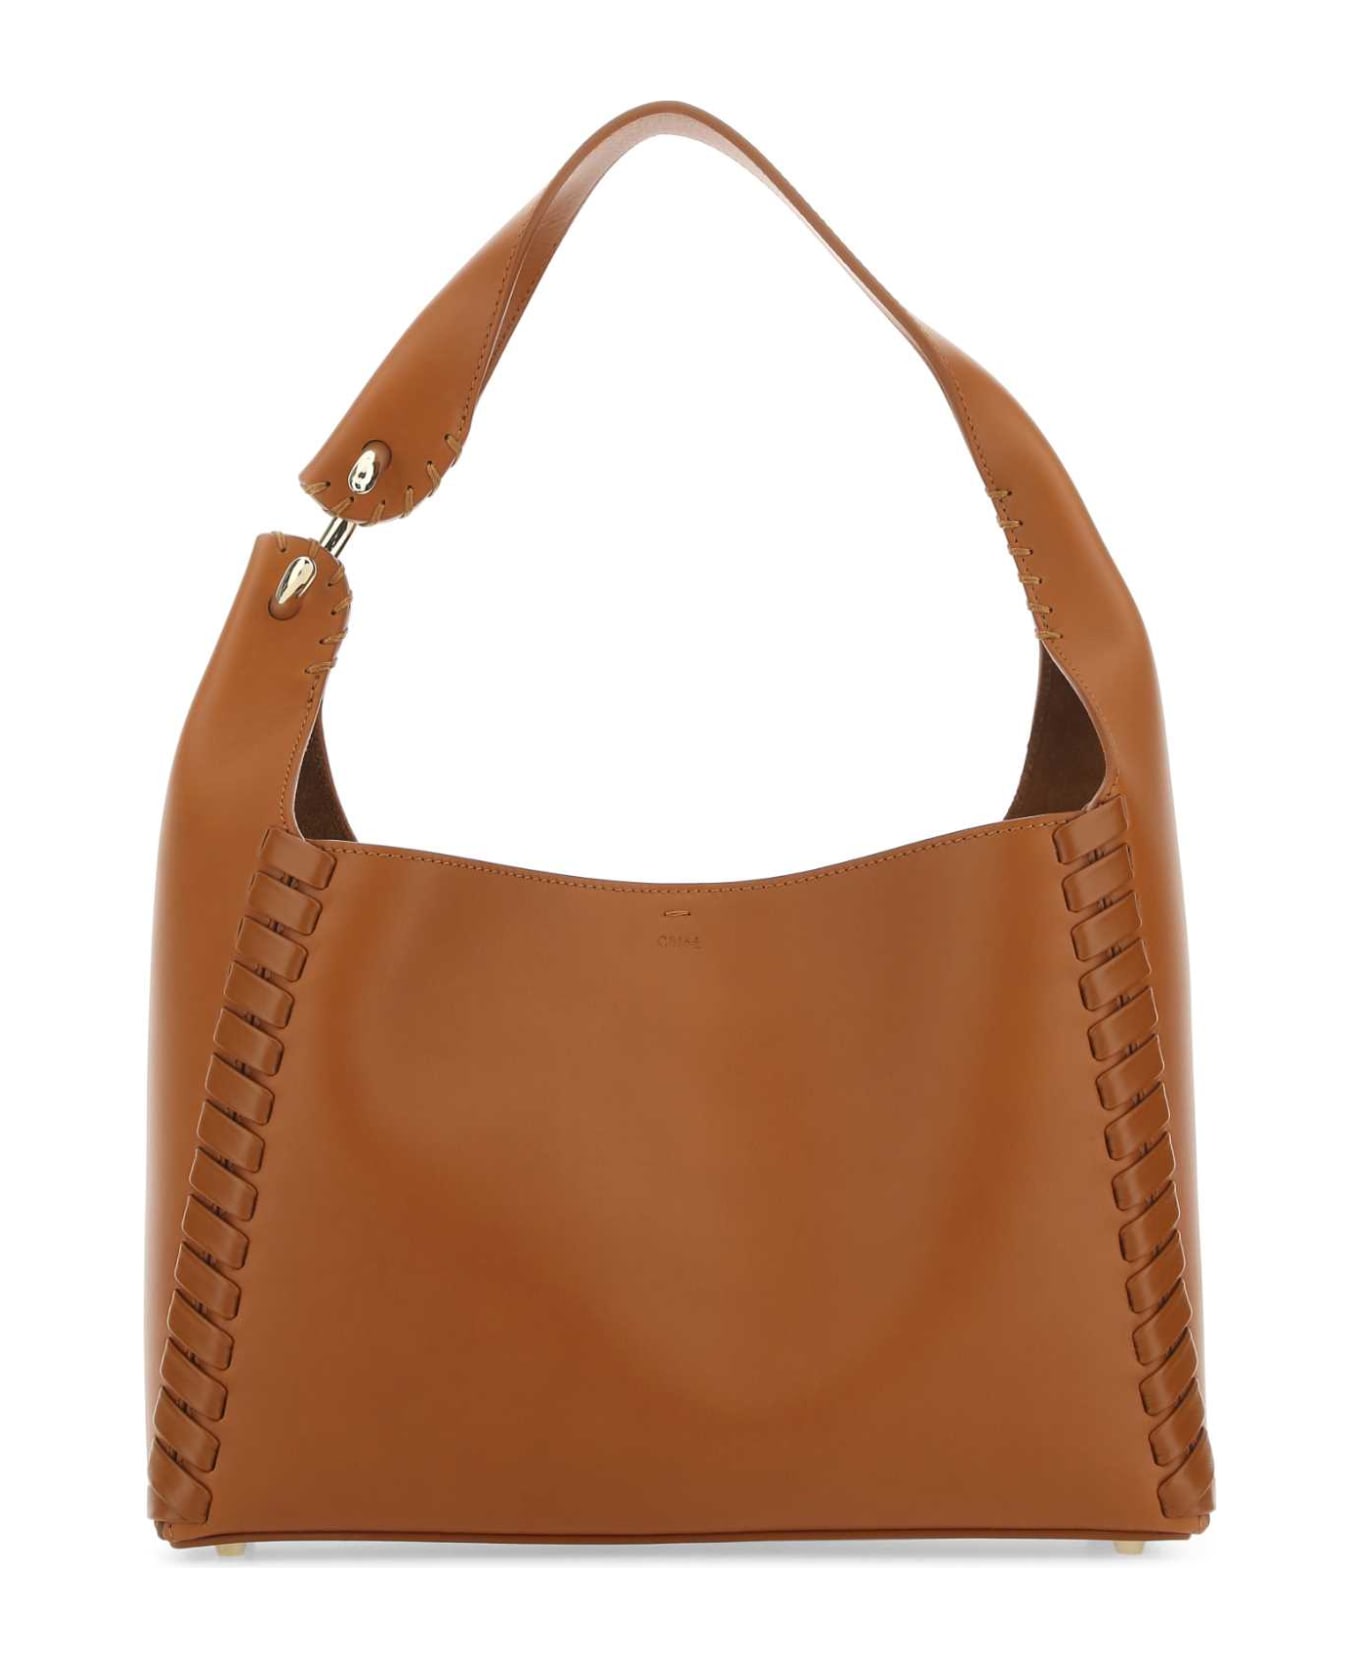 Chloé Caramel Leather Mate Shoulder Bag - 247 トートバッグ